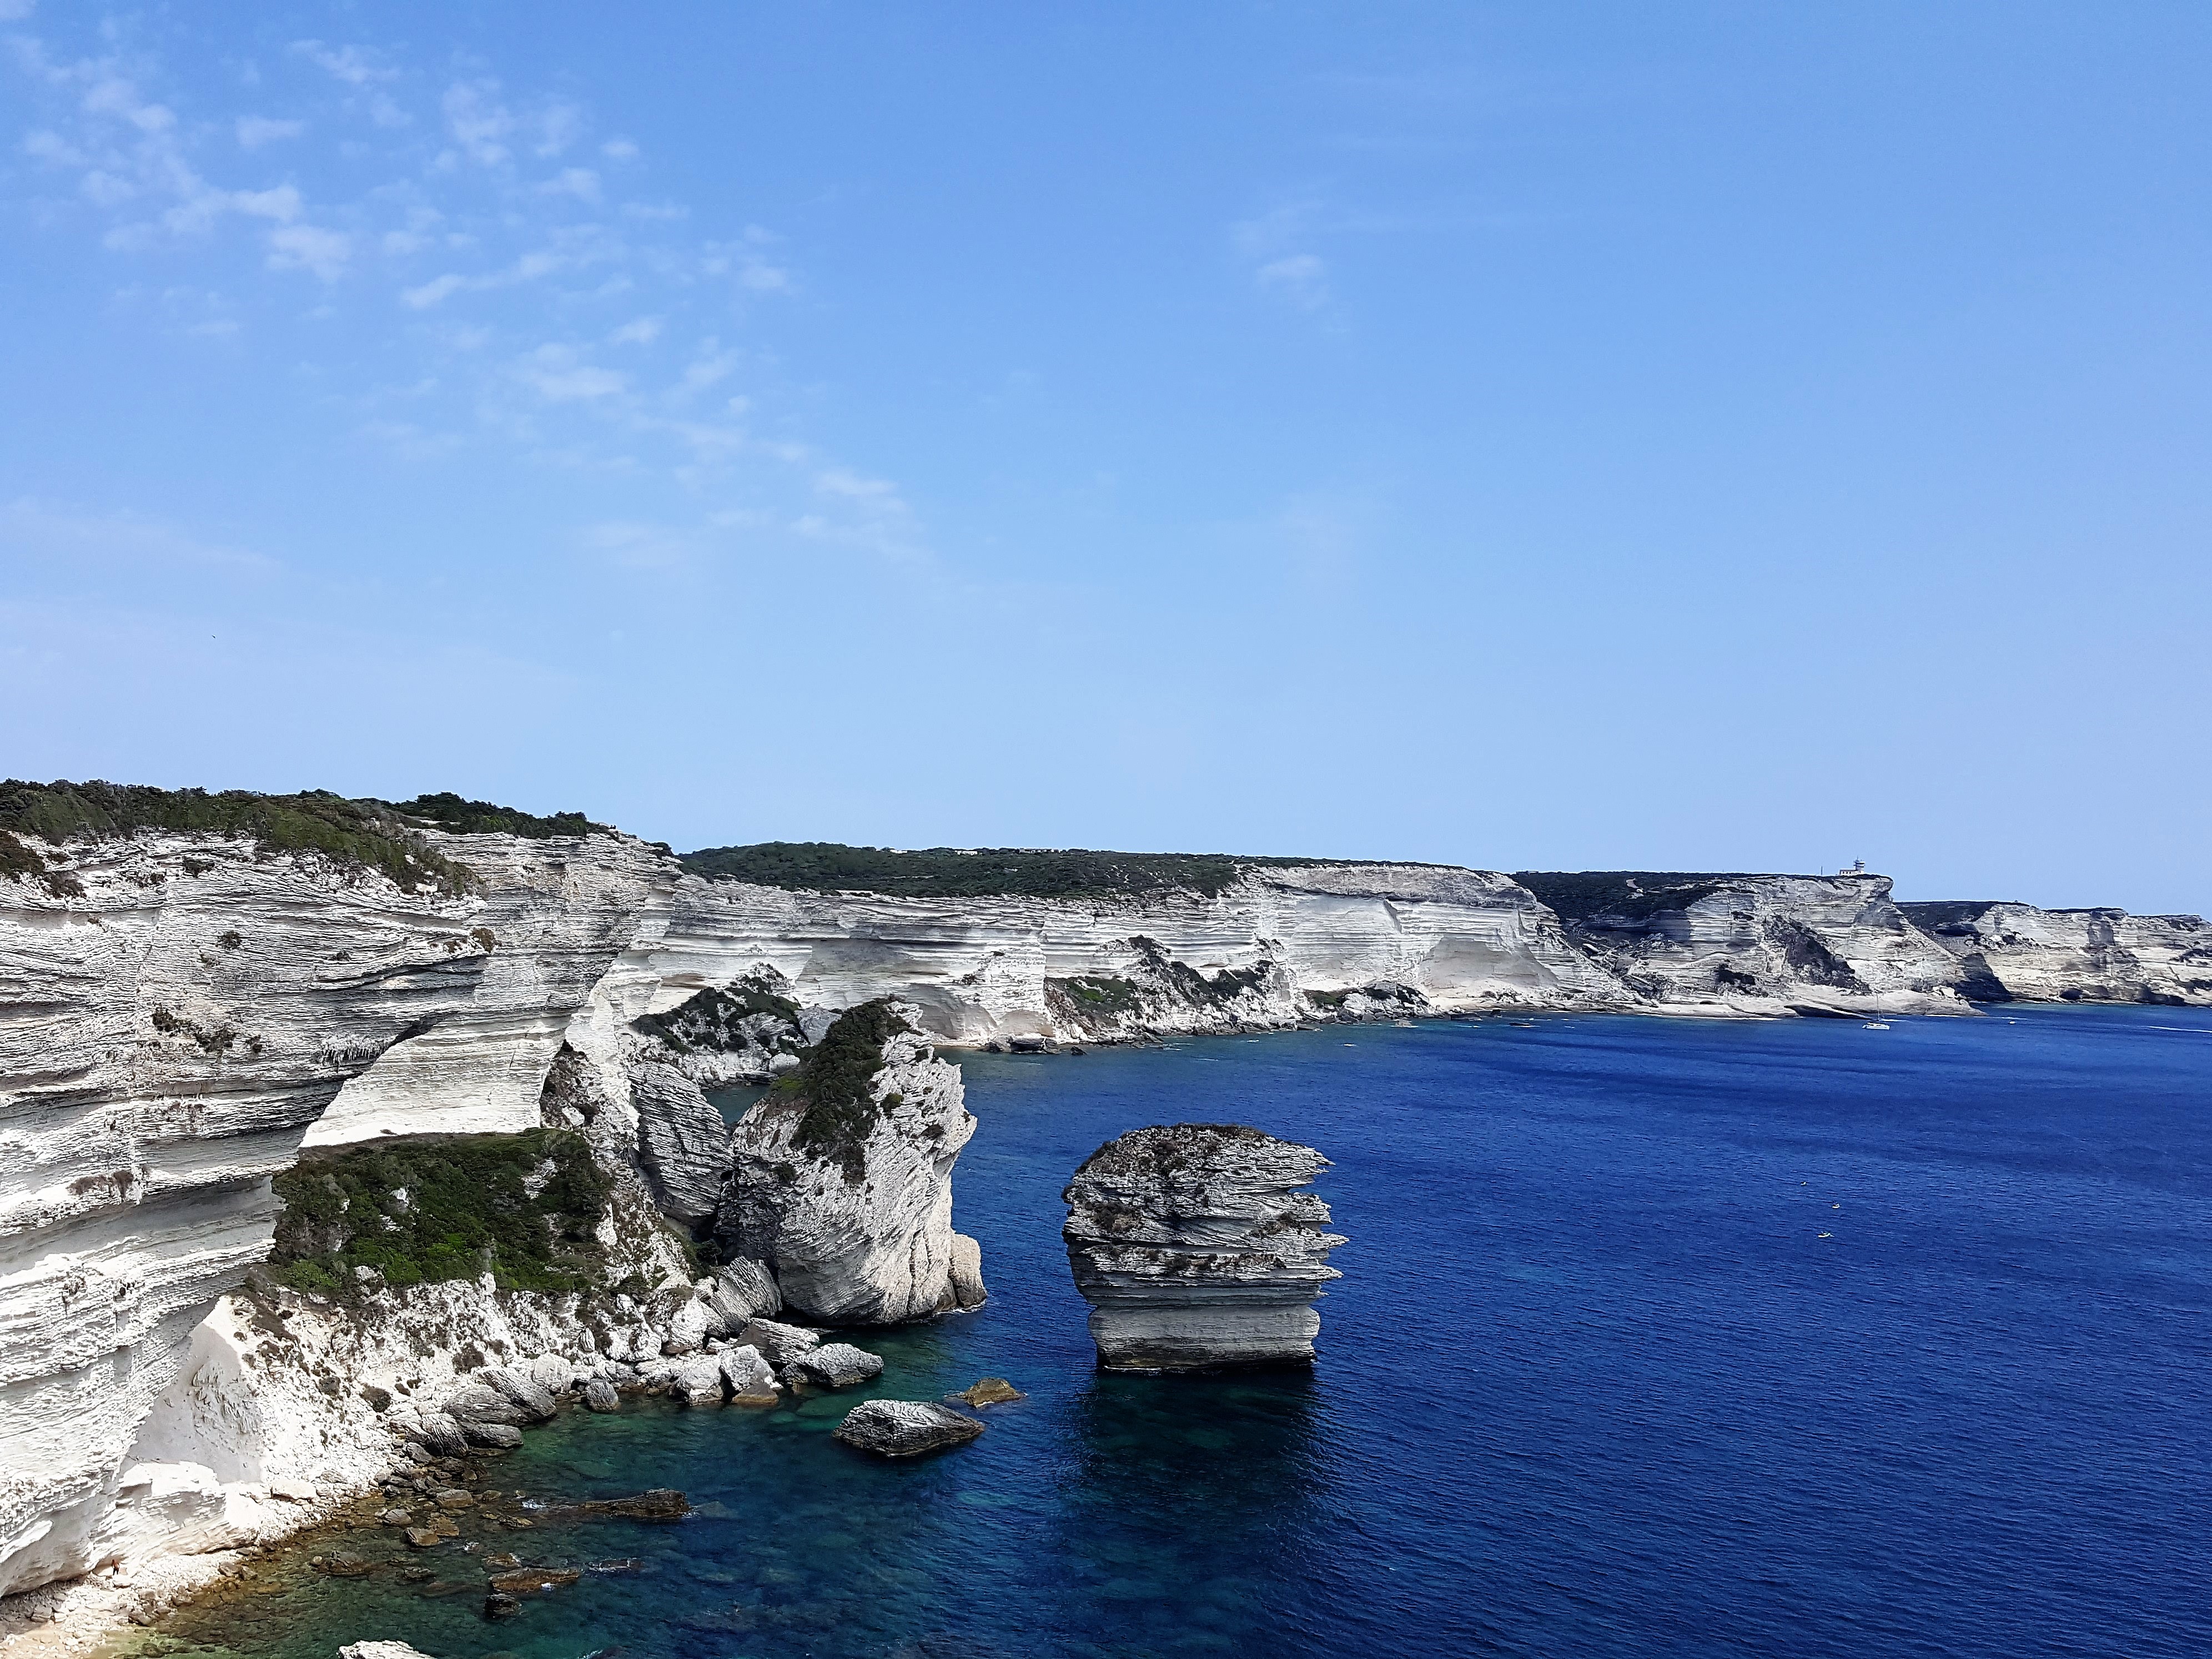 Corse du sud juillet 2019 (31)